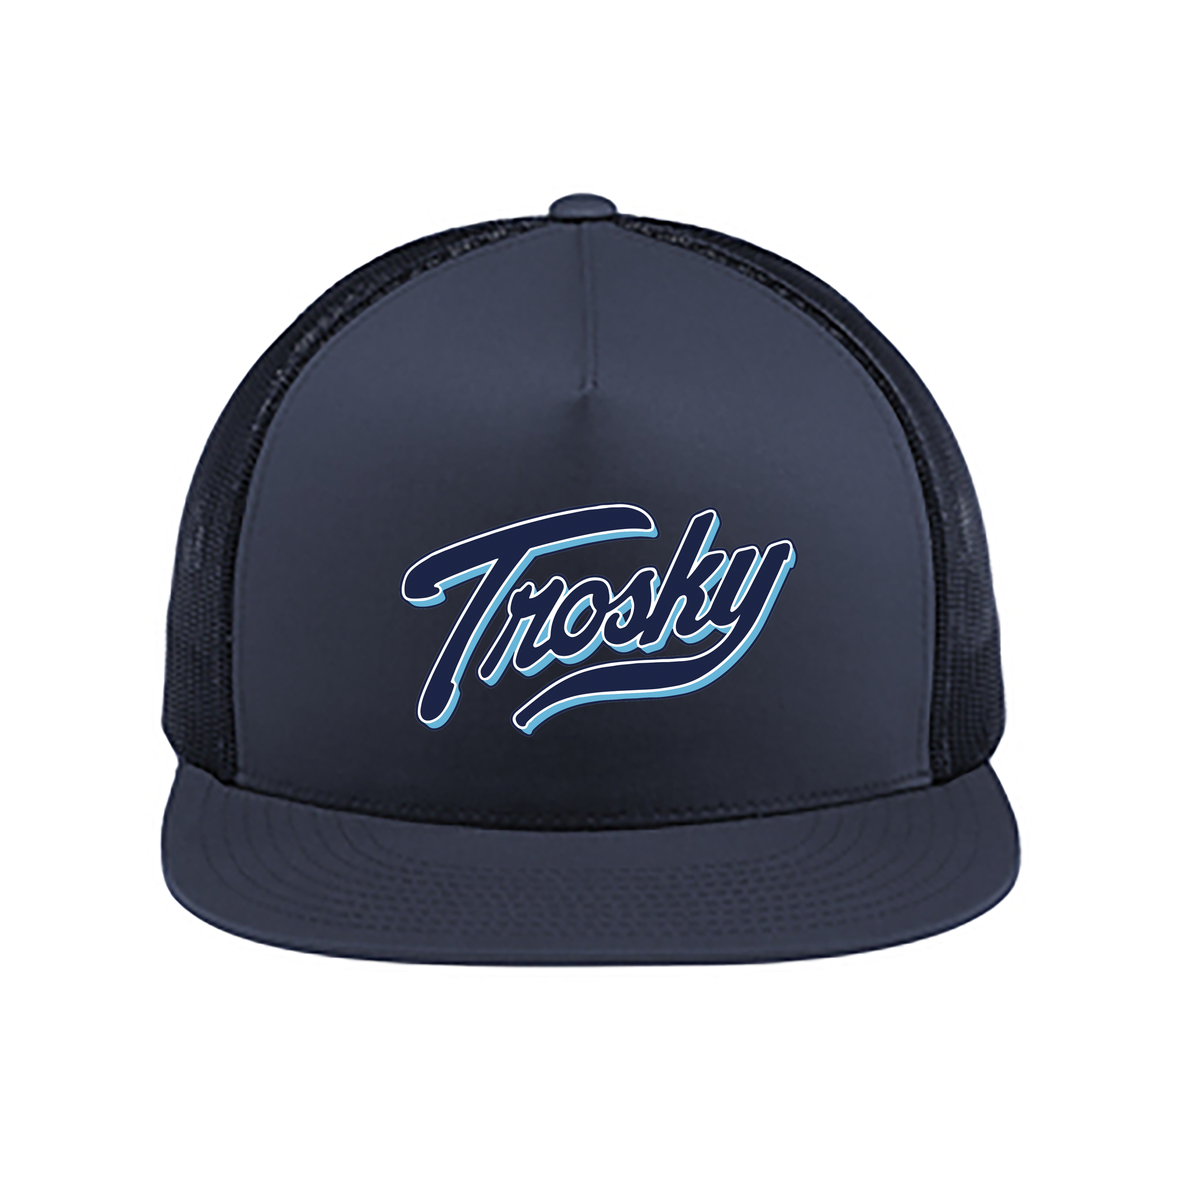 Trosky Baseball 5-Panel Classic Trucker Mesh Back Cap